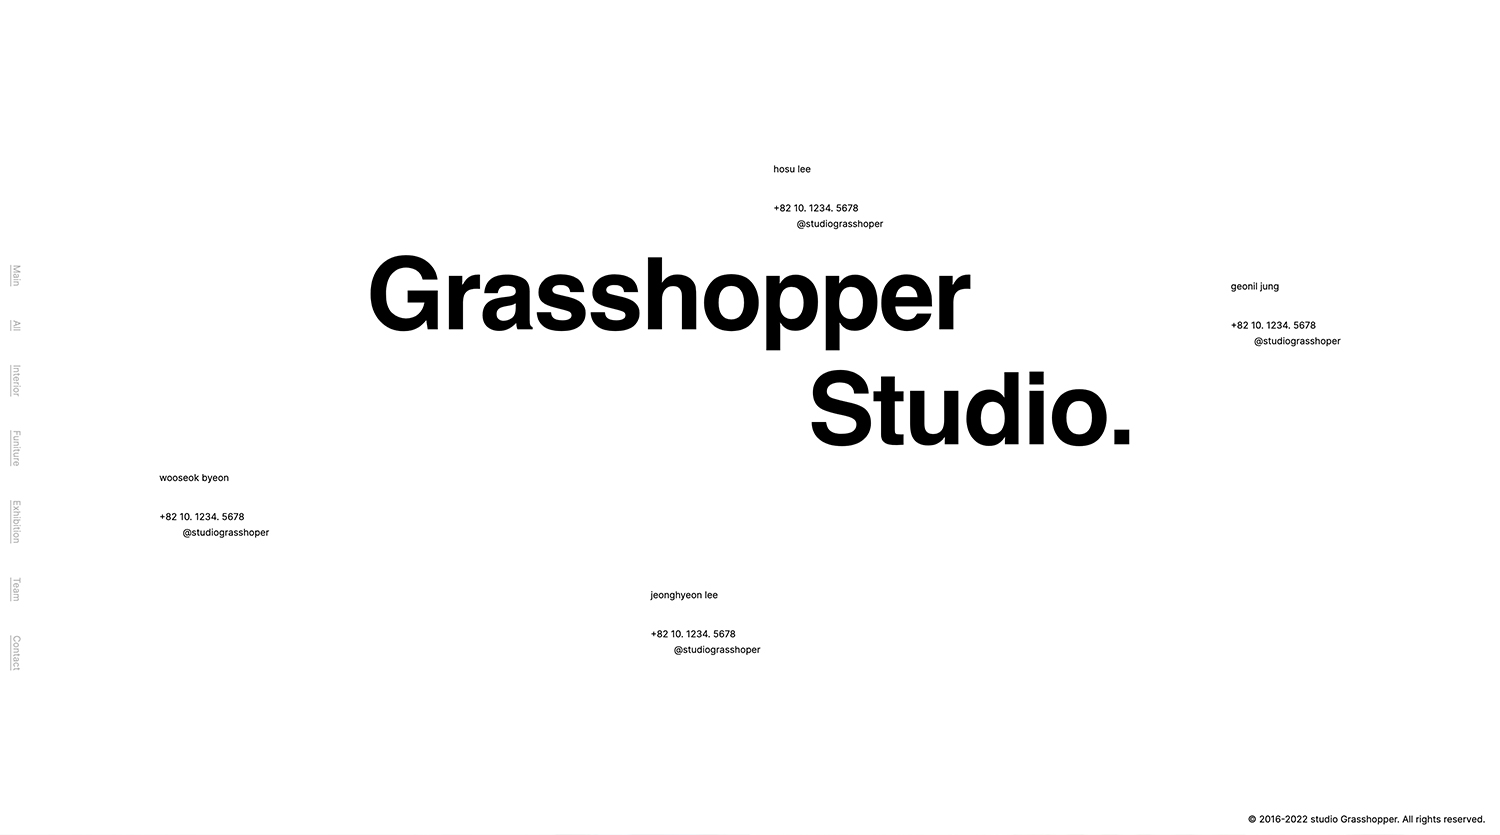 GRASSHOPPER STUDIO